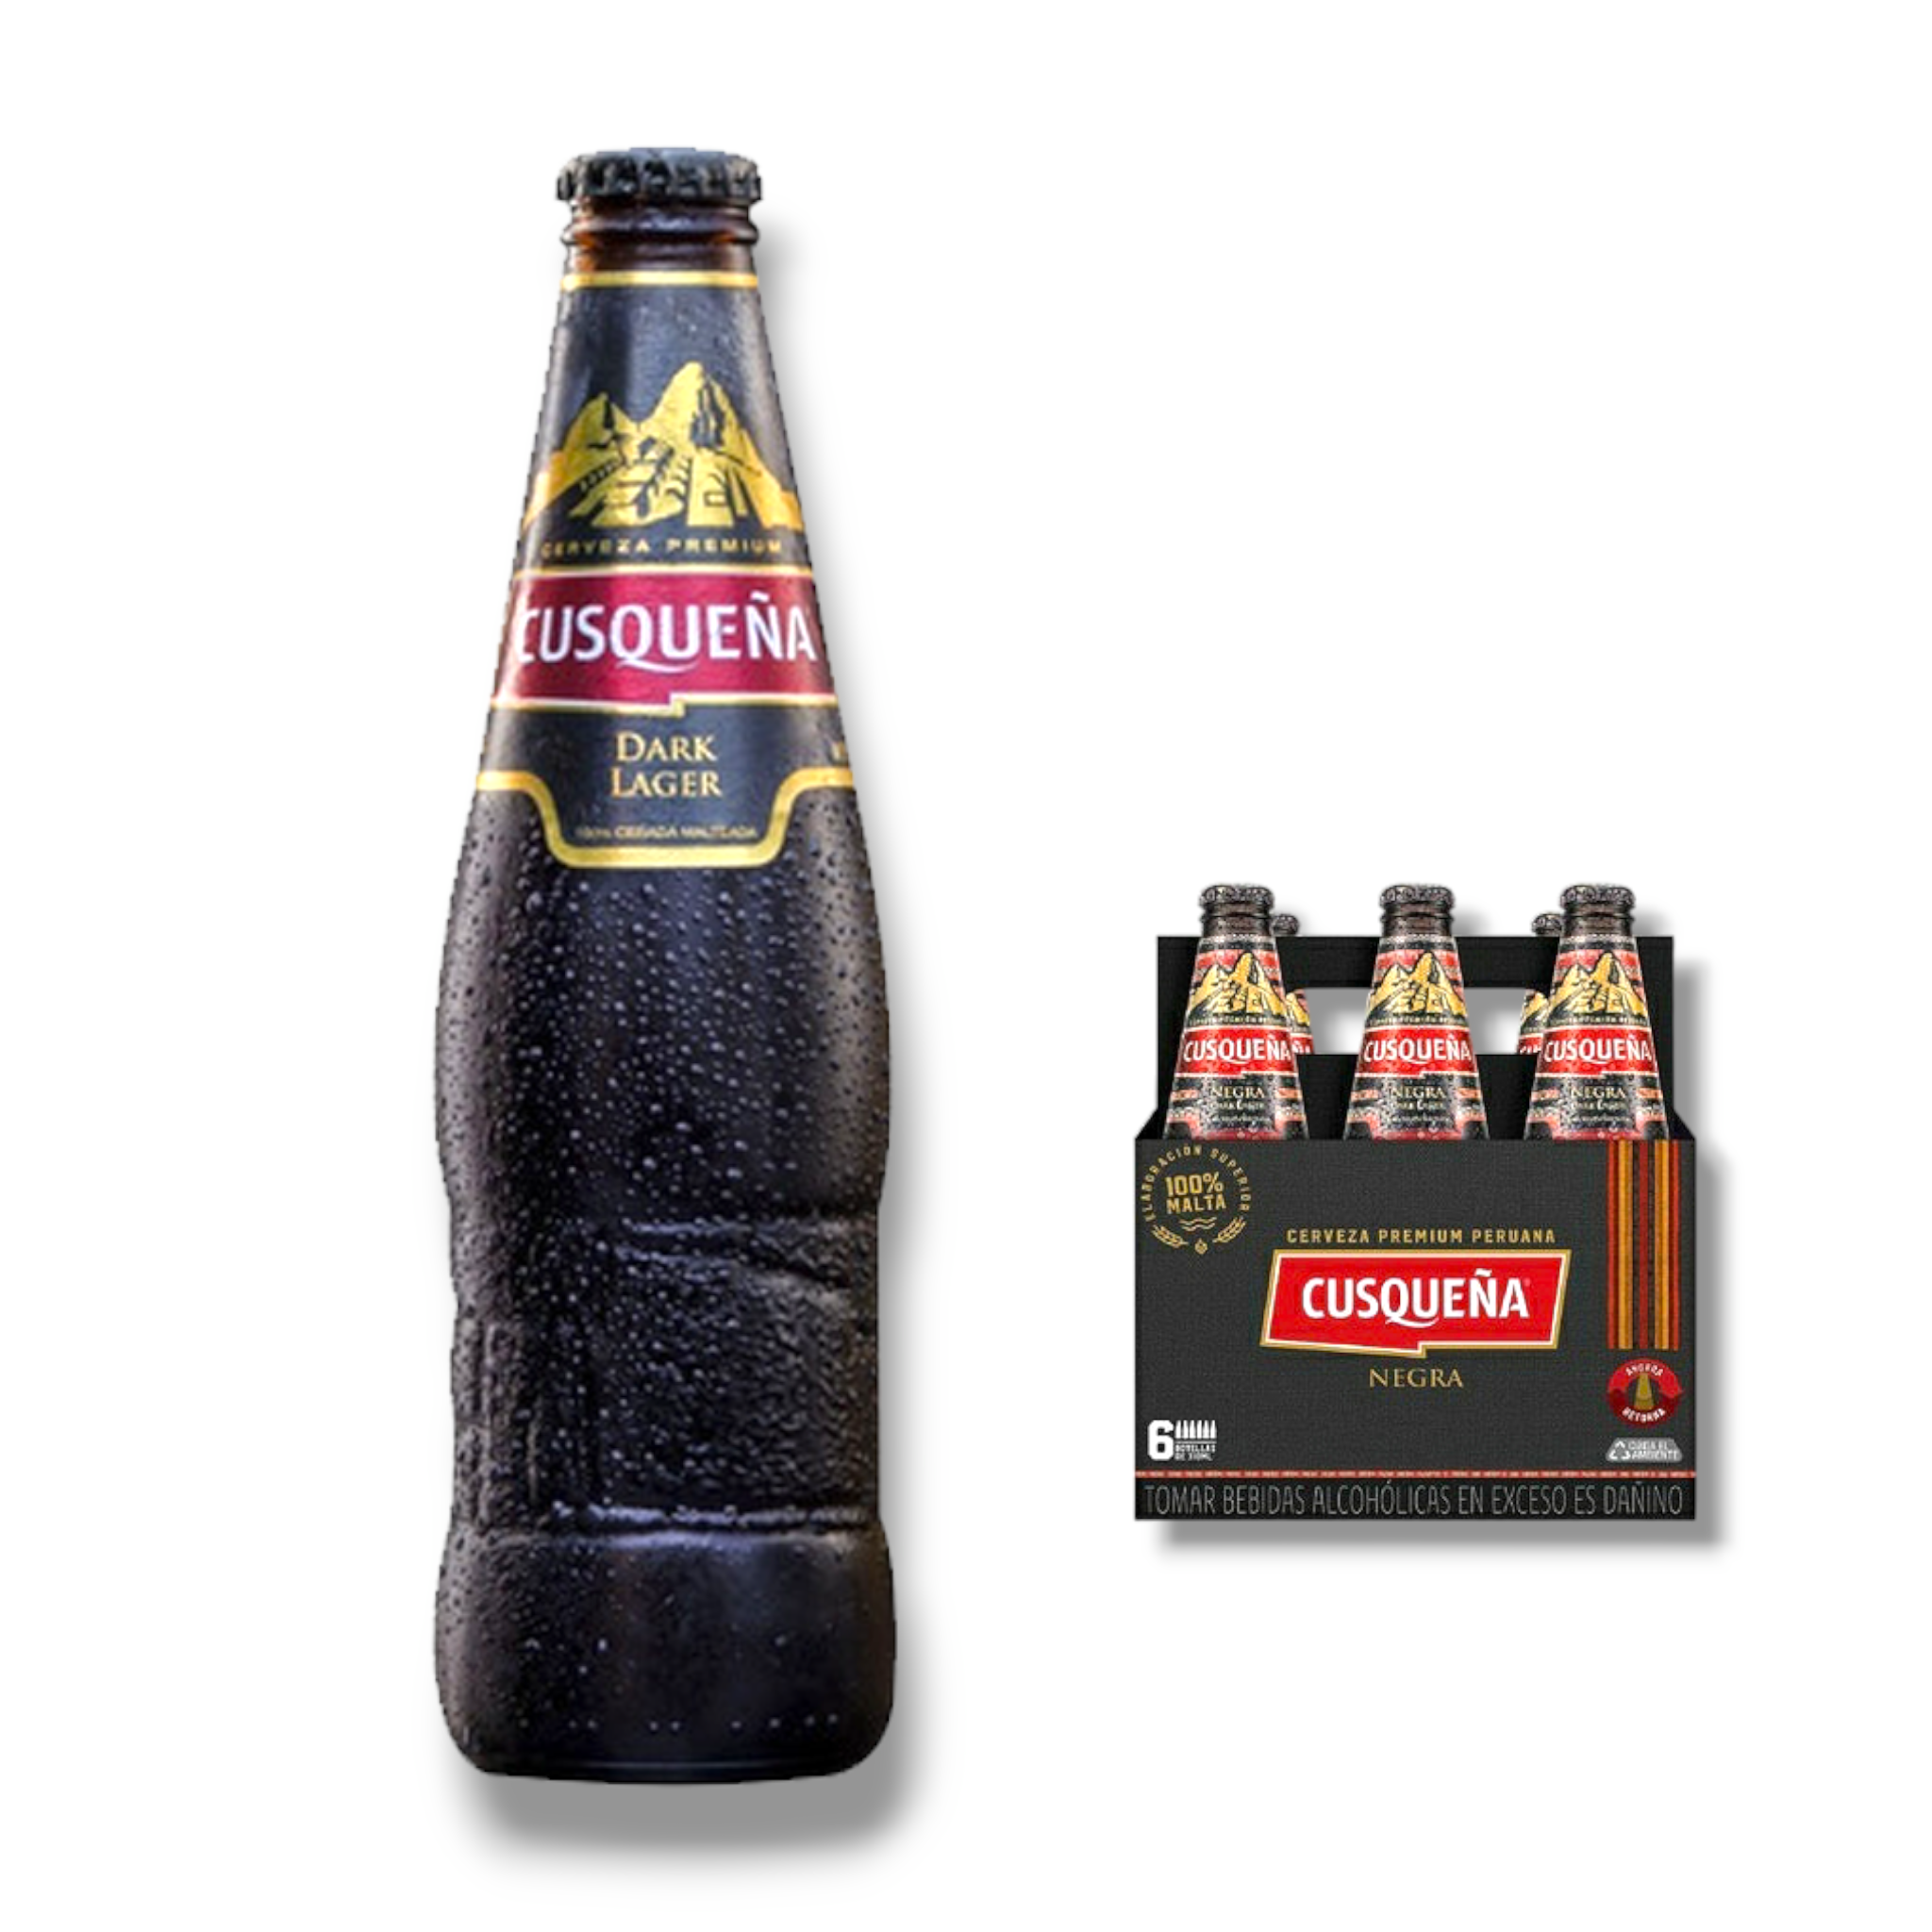 Cusquena Dark Lager 330ml - dunkles Bier aus Peru mit 5,6% Vol.